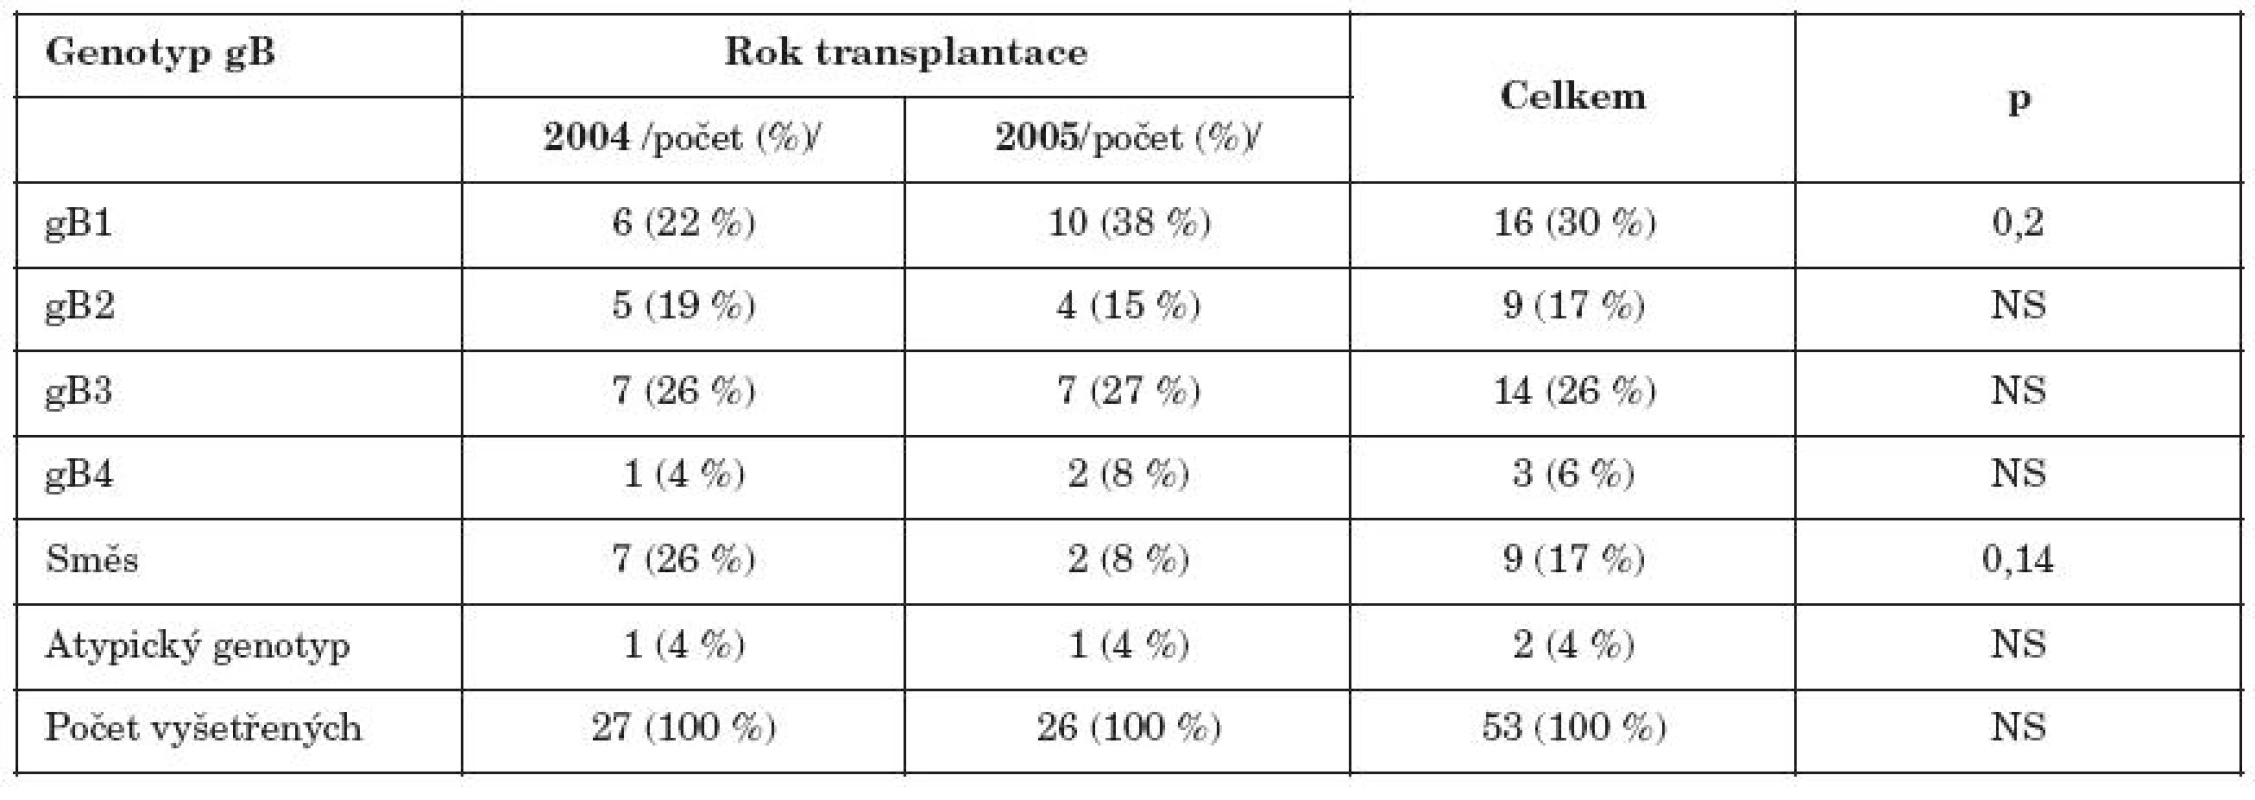 Zastoupení jednotlivých genotypů glykoproteinu gB u příjemců HSCT transplantovaných v r.2004 a 2005

Table 2. Distribution of gB genotypes in HSCT recipients transplanted in 2004 and 2005.